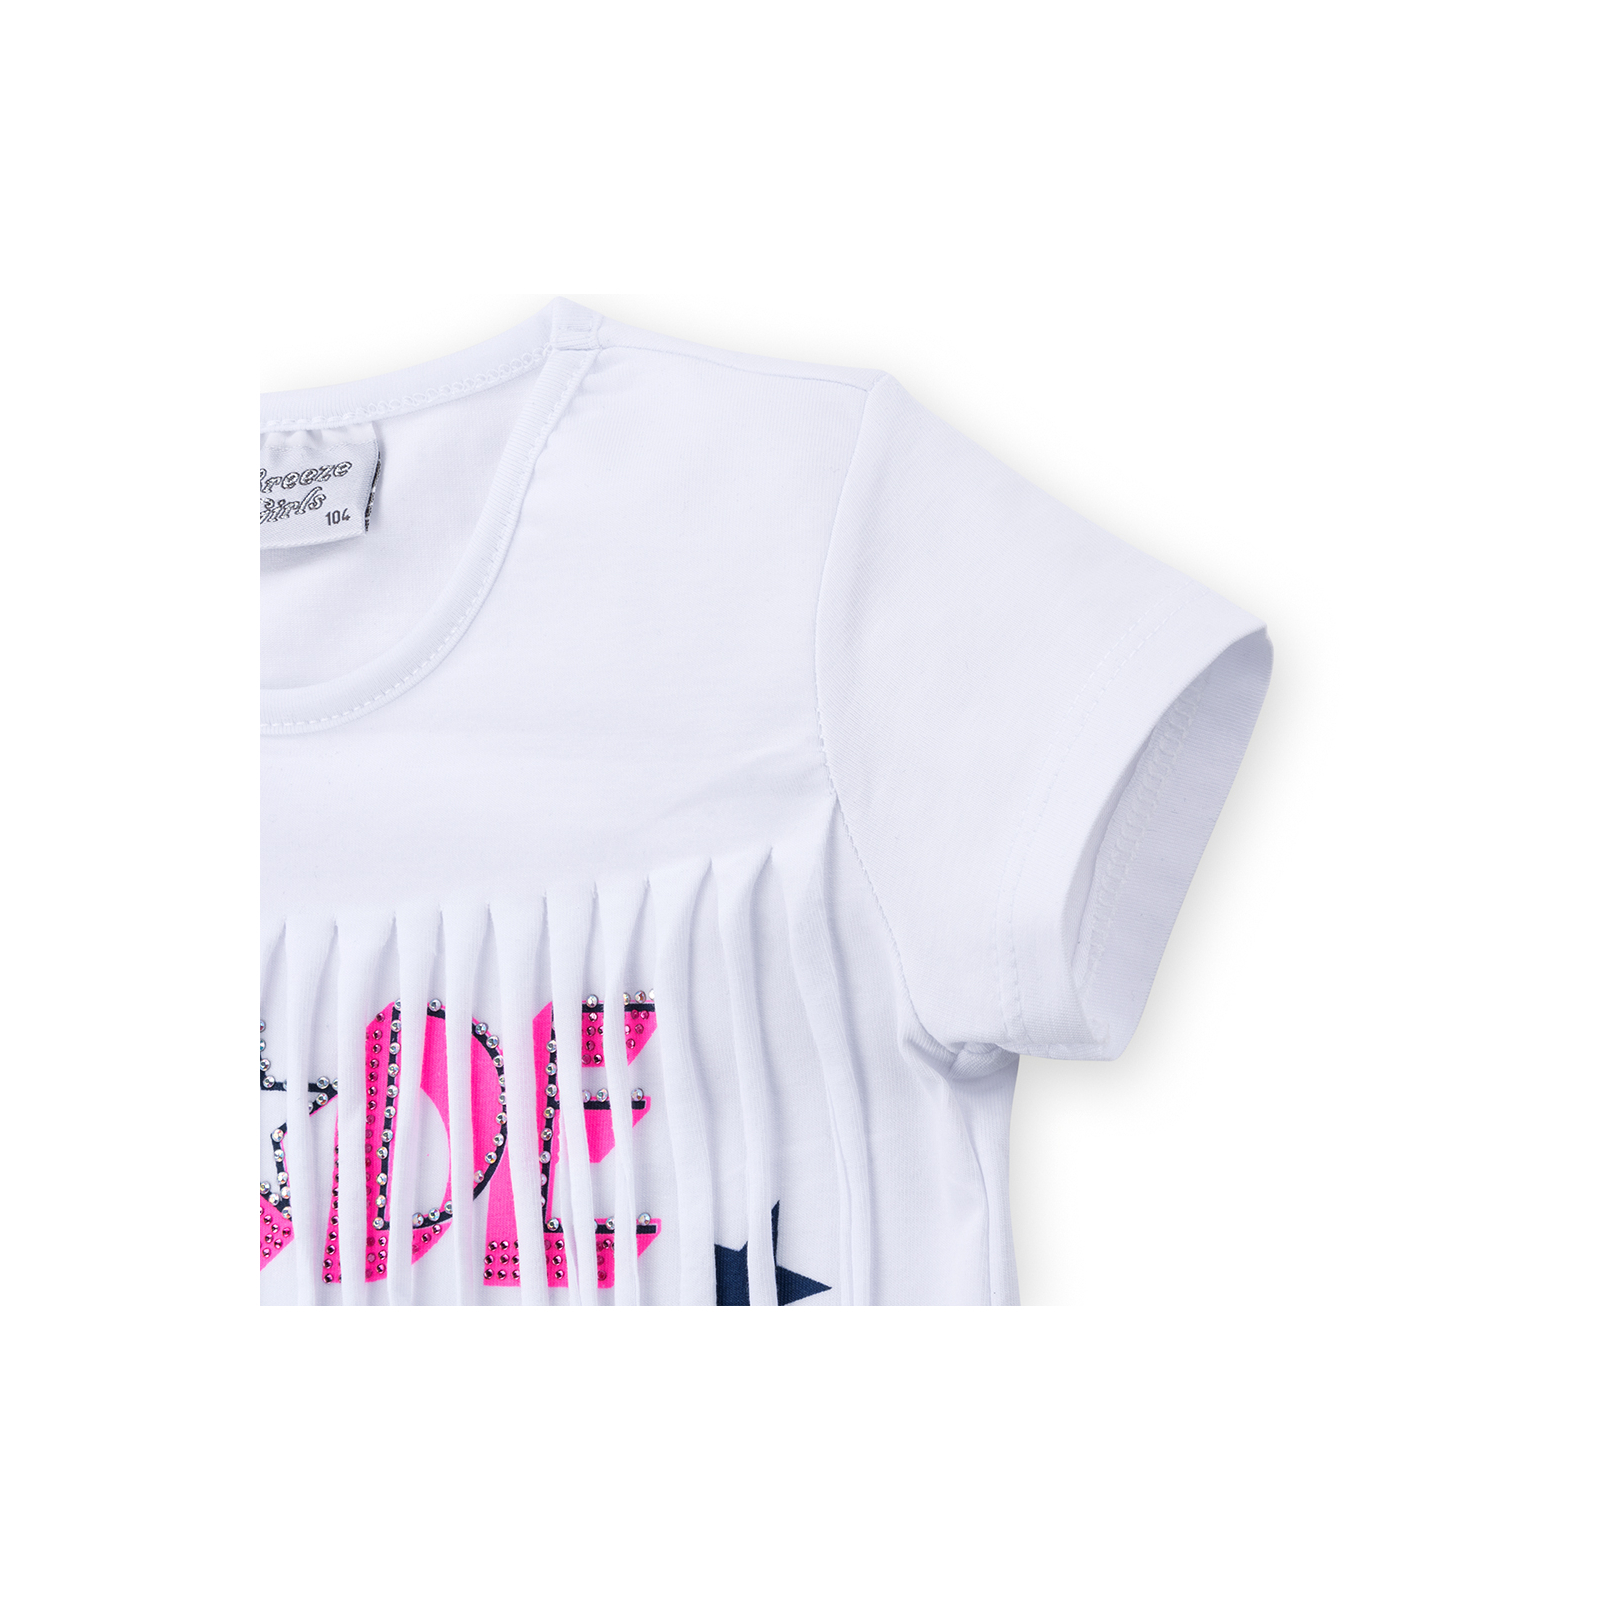 Набор детской одежды Breeze футболка со звездочками с шортами (9036-116G-white) изображение 5